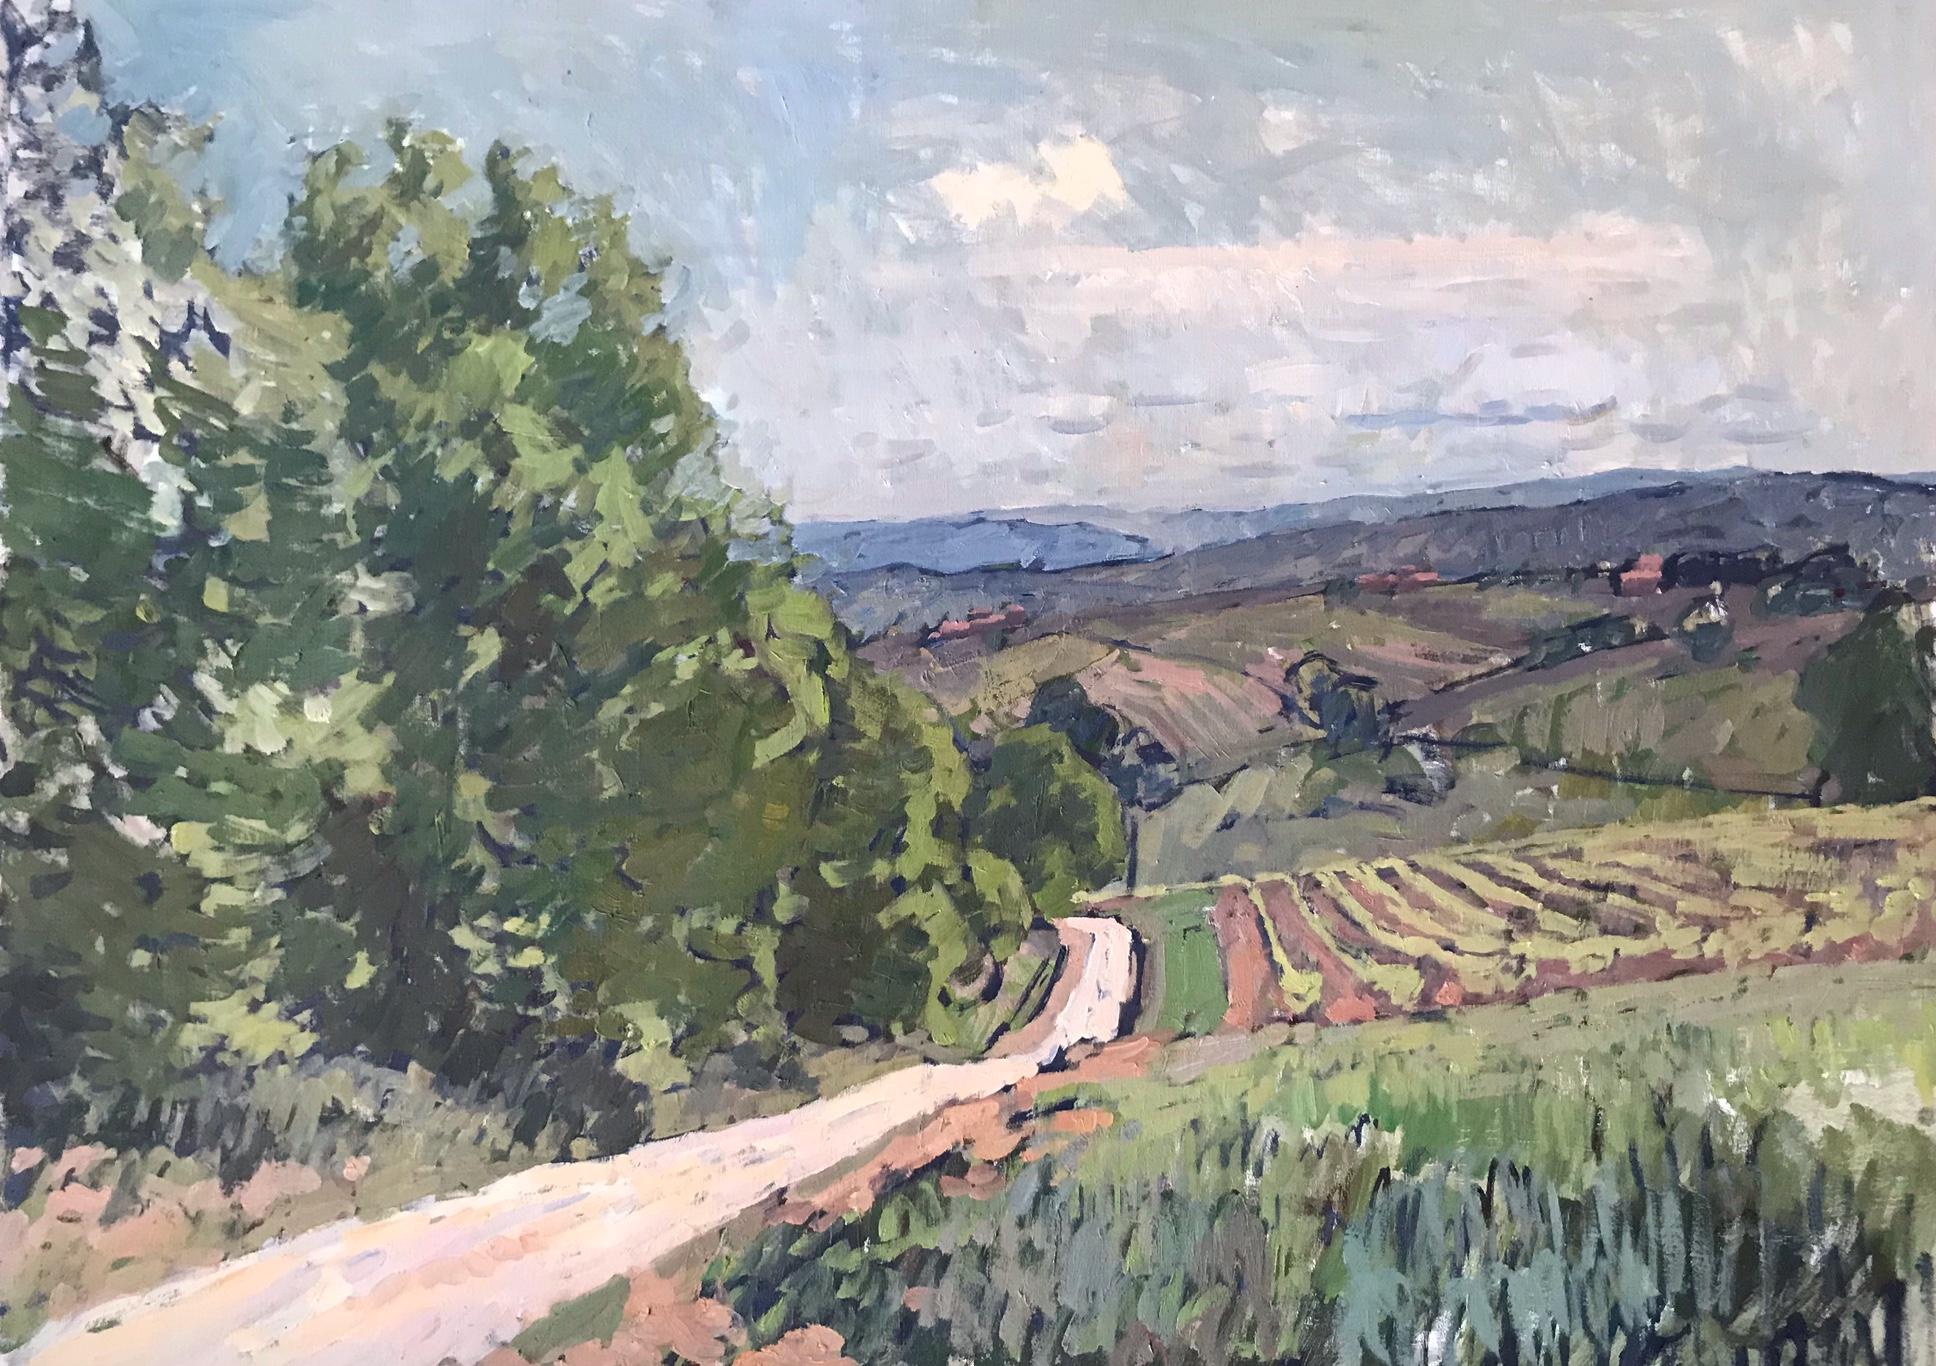 Ben Fenske Landscape Painting - "Morning Walk" impressionist Tuscan landscape near the Fenske's home